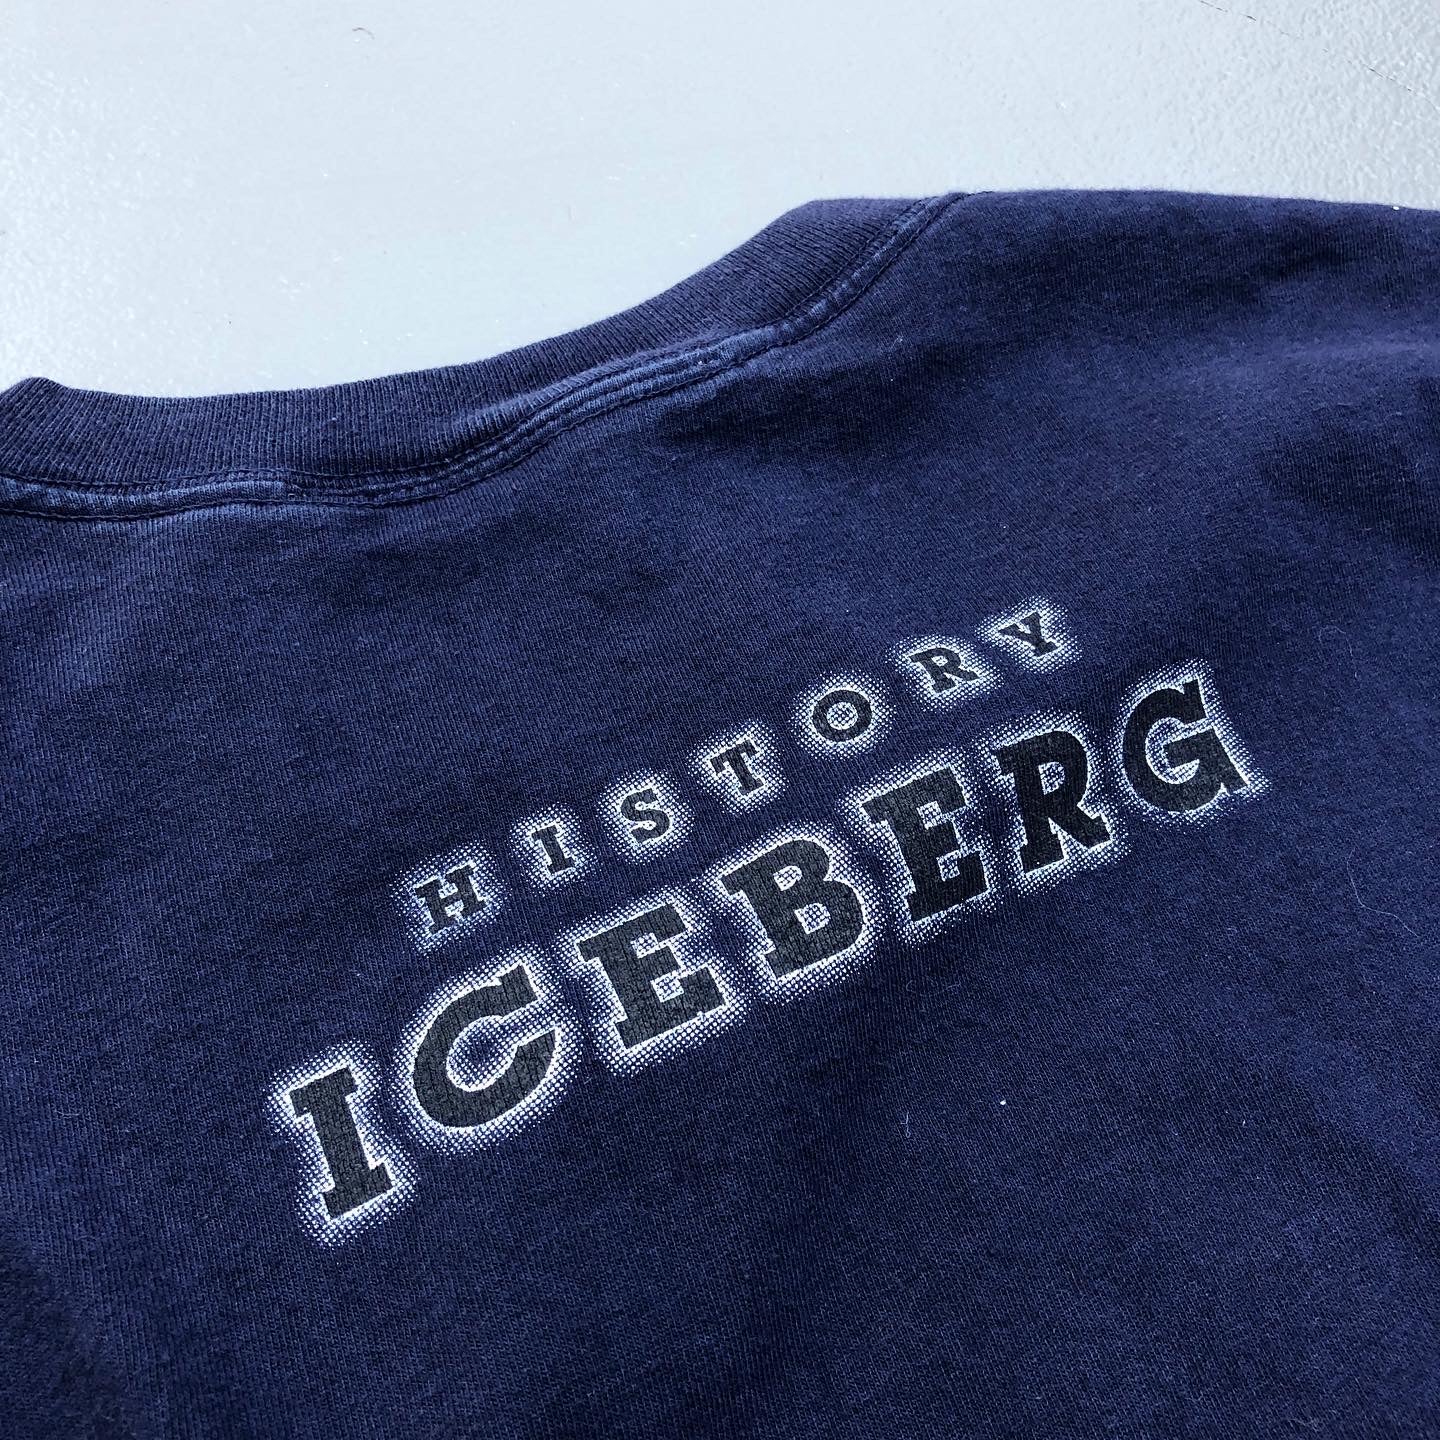 ICE BERG JEANS L/S Tee